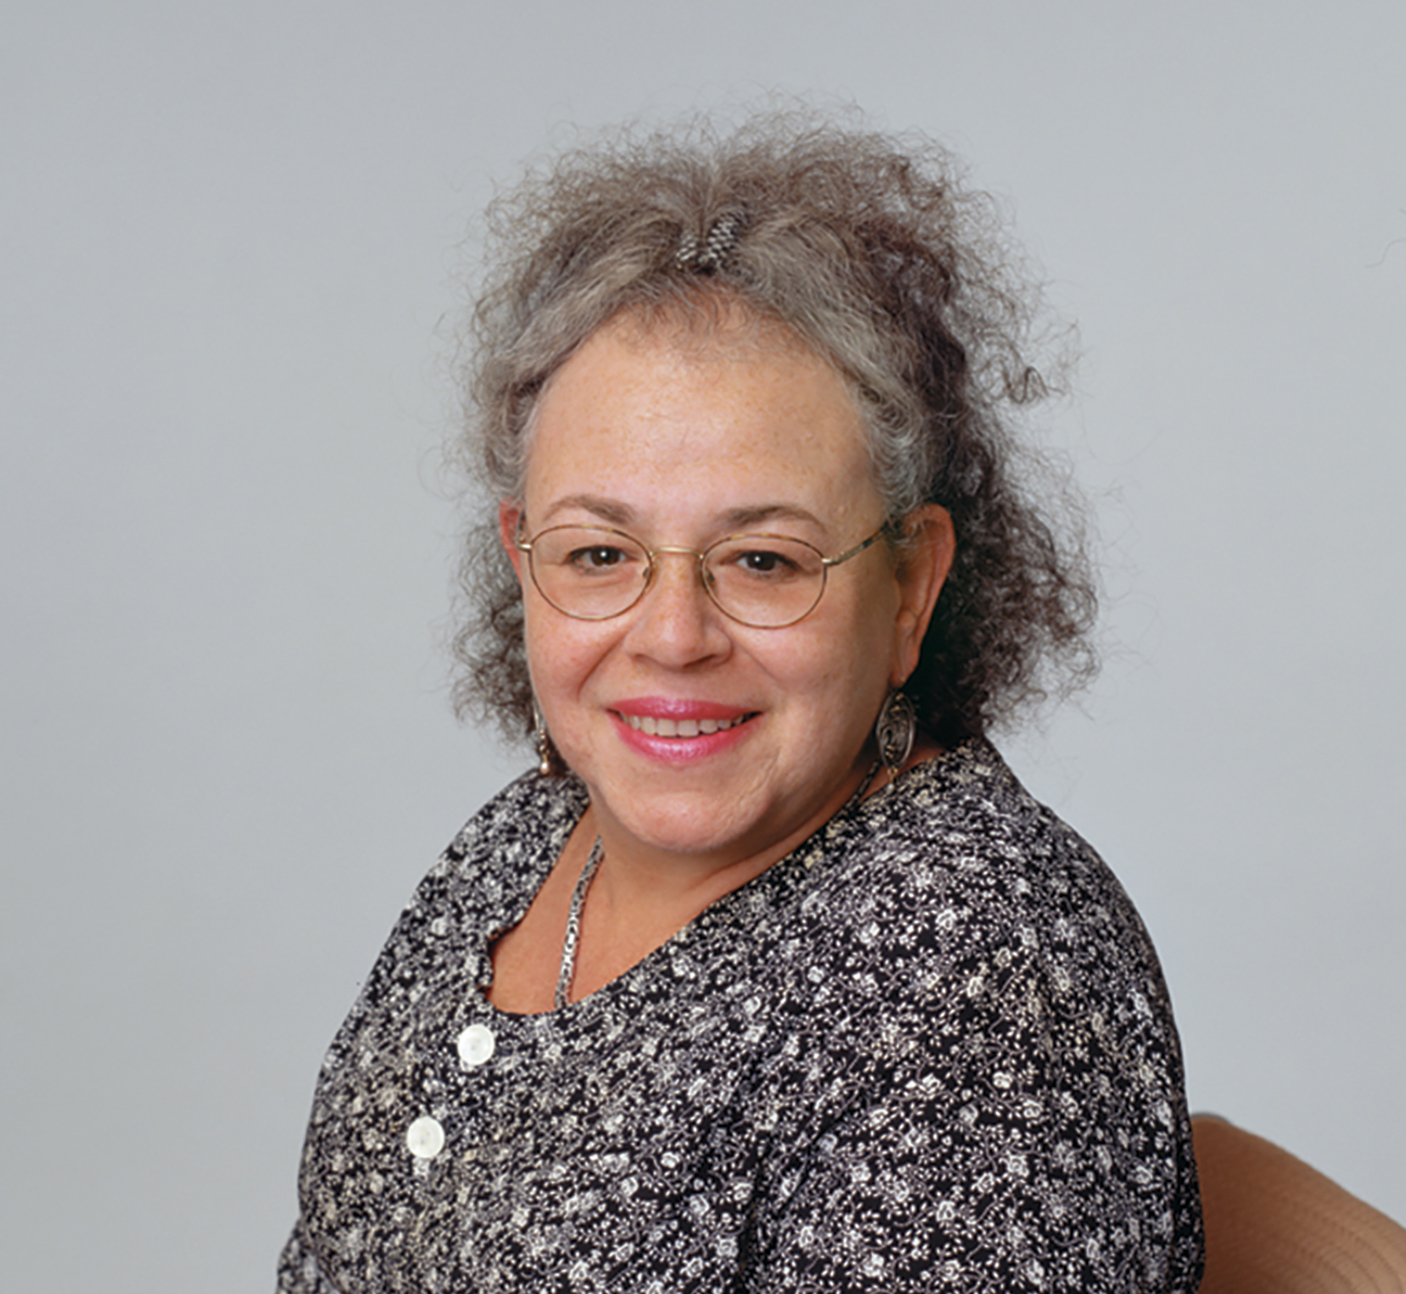 Professor Emerita Aleta Estreicher